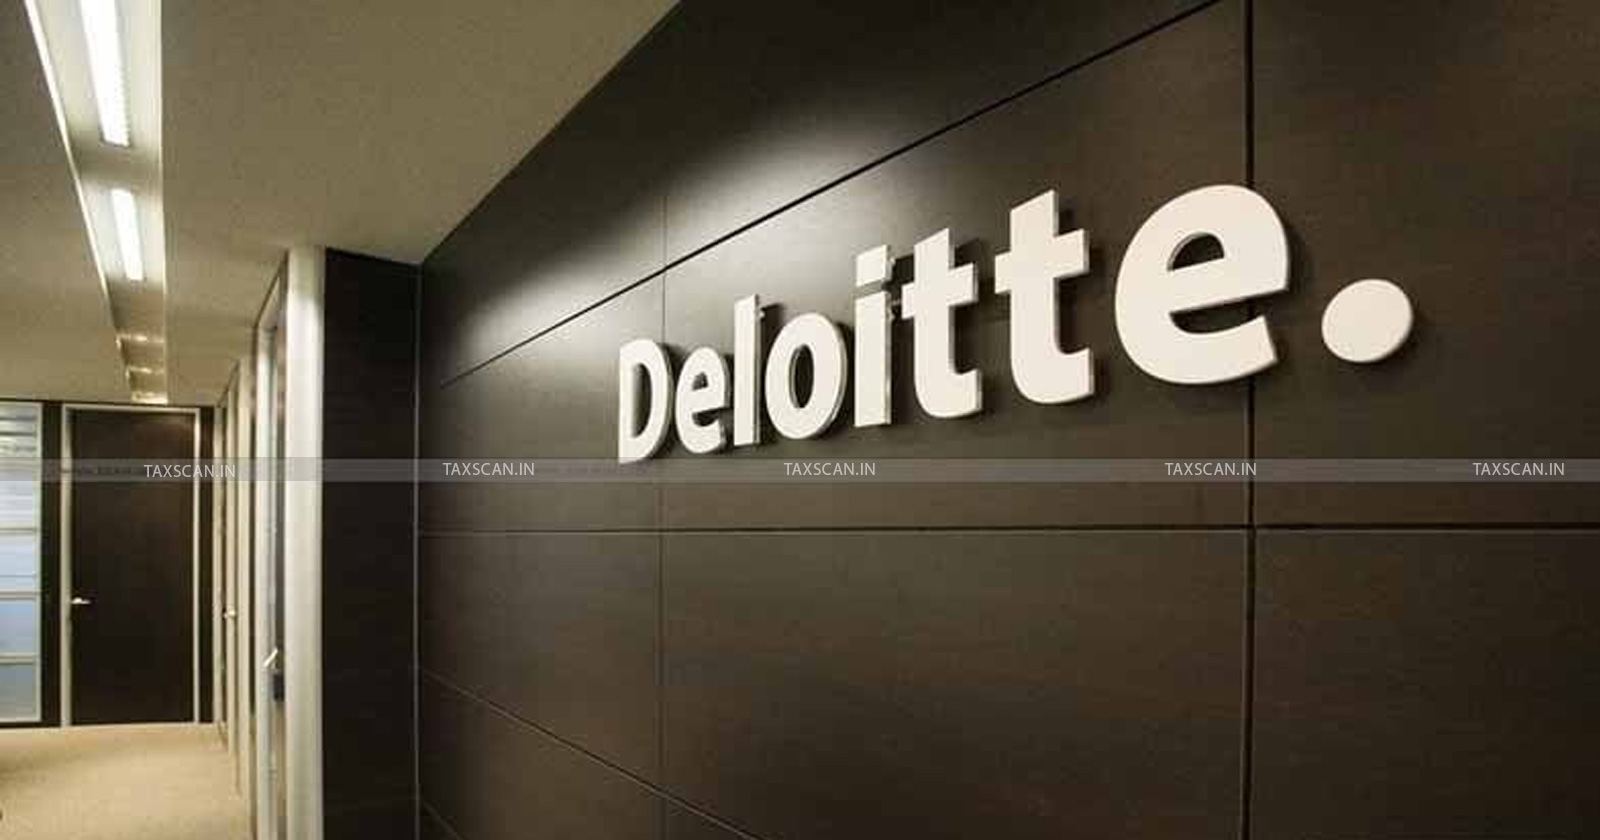 ACCA Vacancy in Deloitte - B com Vacancy in Deloitte - Deloitte - Deloitte career - TAXSCAN